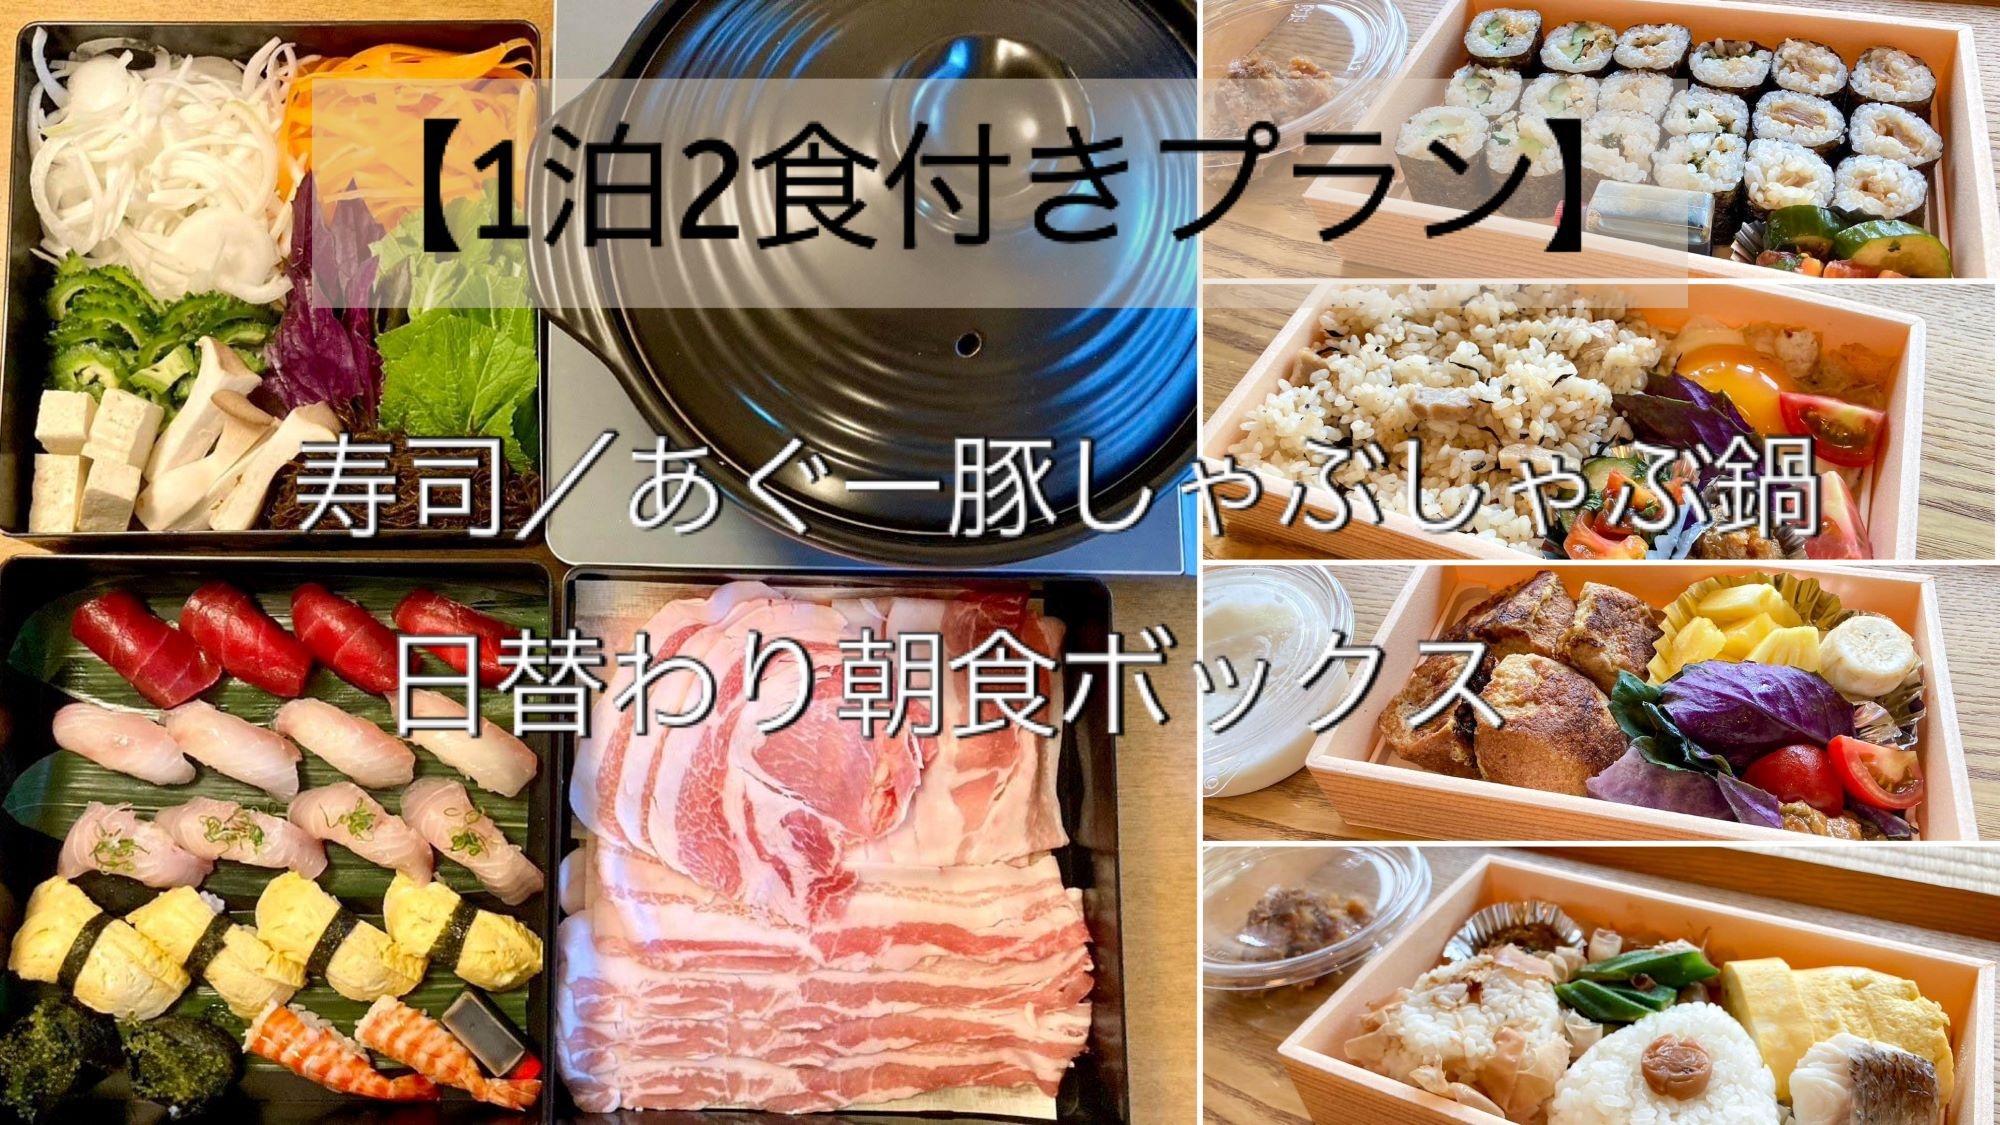 【1泊2食付きプラン】寿司／あぐー豚しゃぶしゃぶ鍋・日替わり朝食ボックス